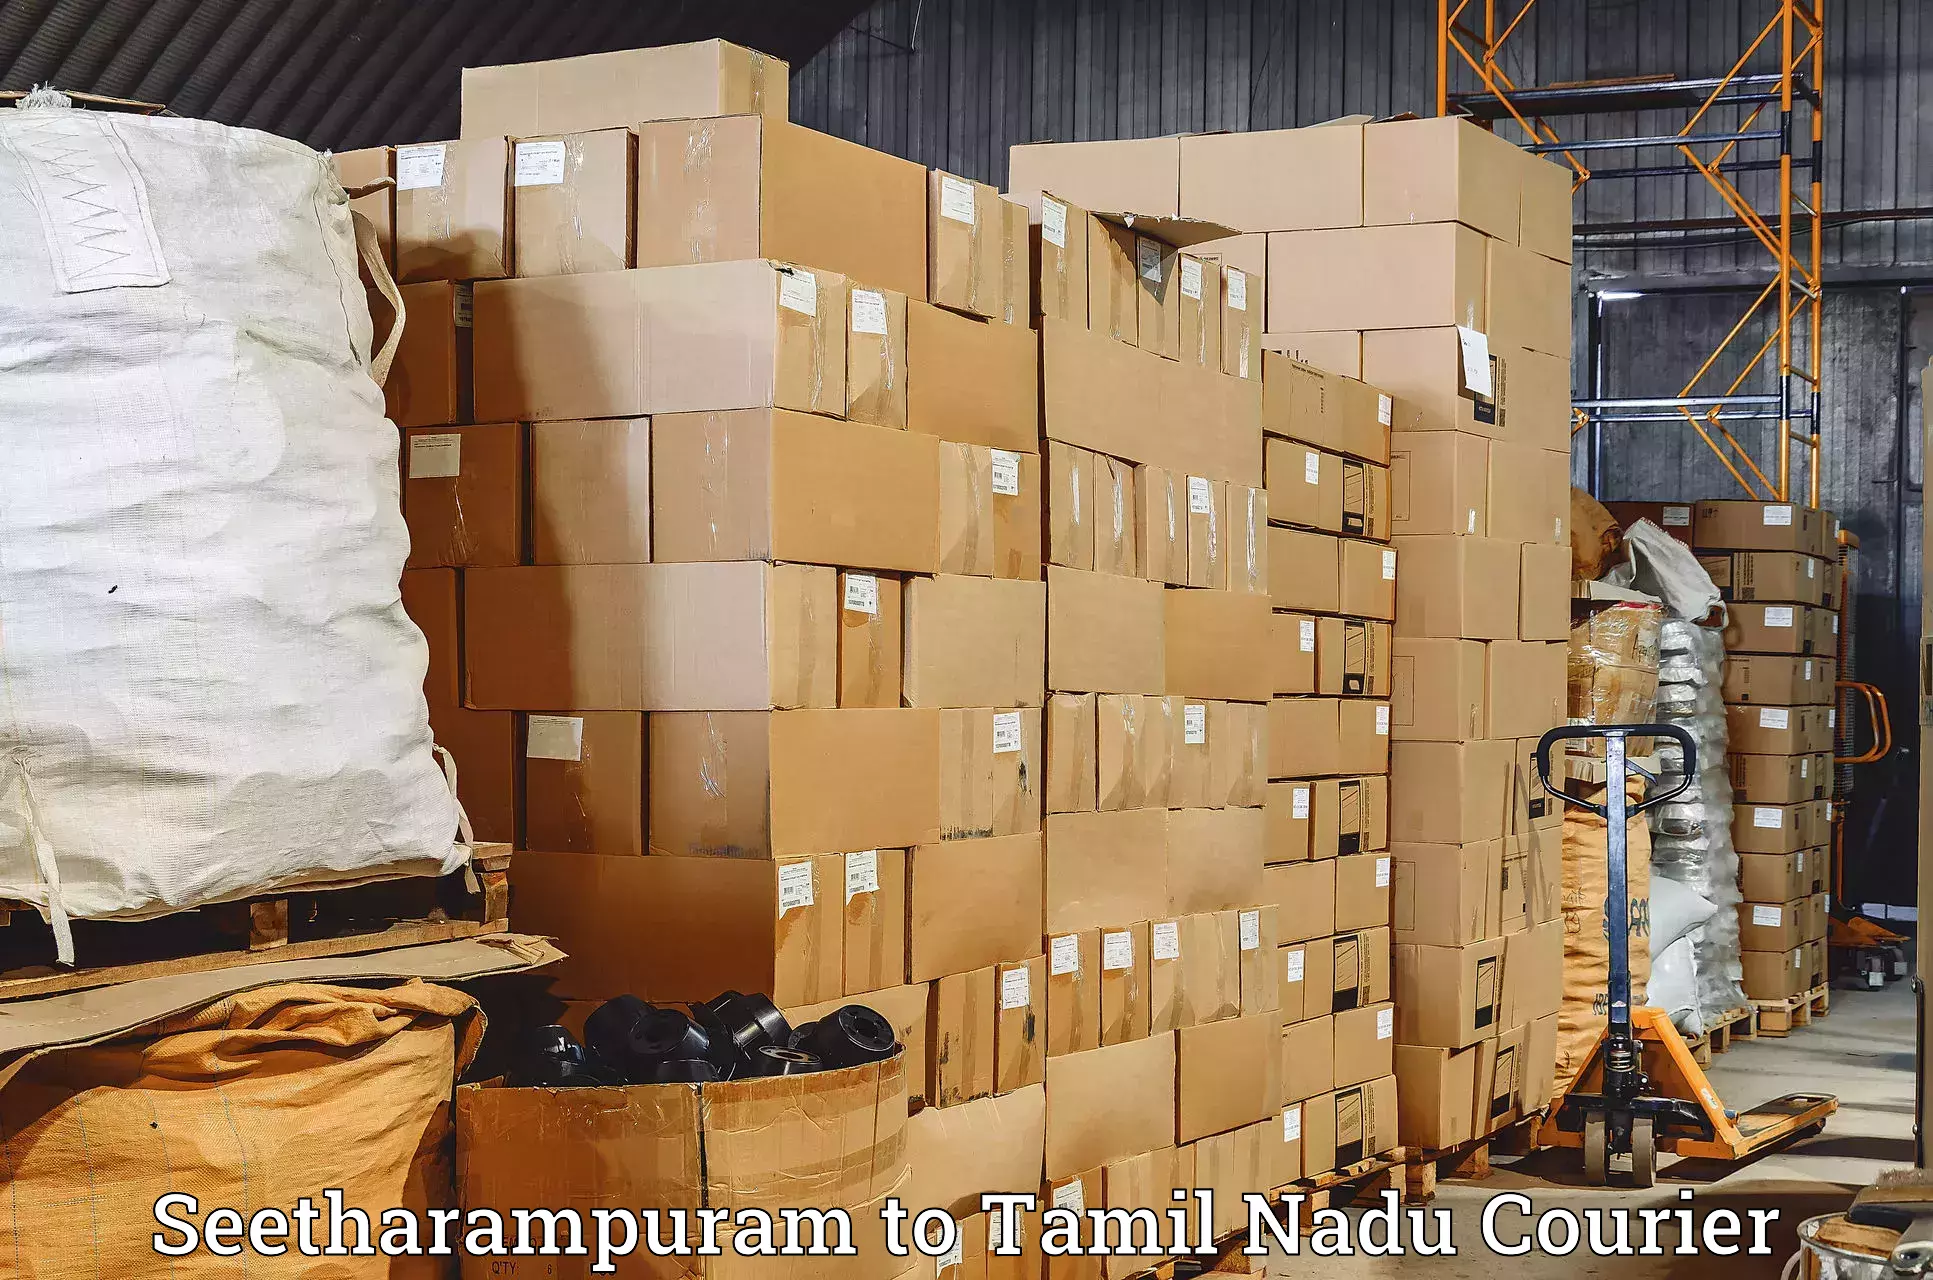 Multi-national courier services Seetharampuram to Karaikudi